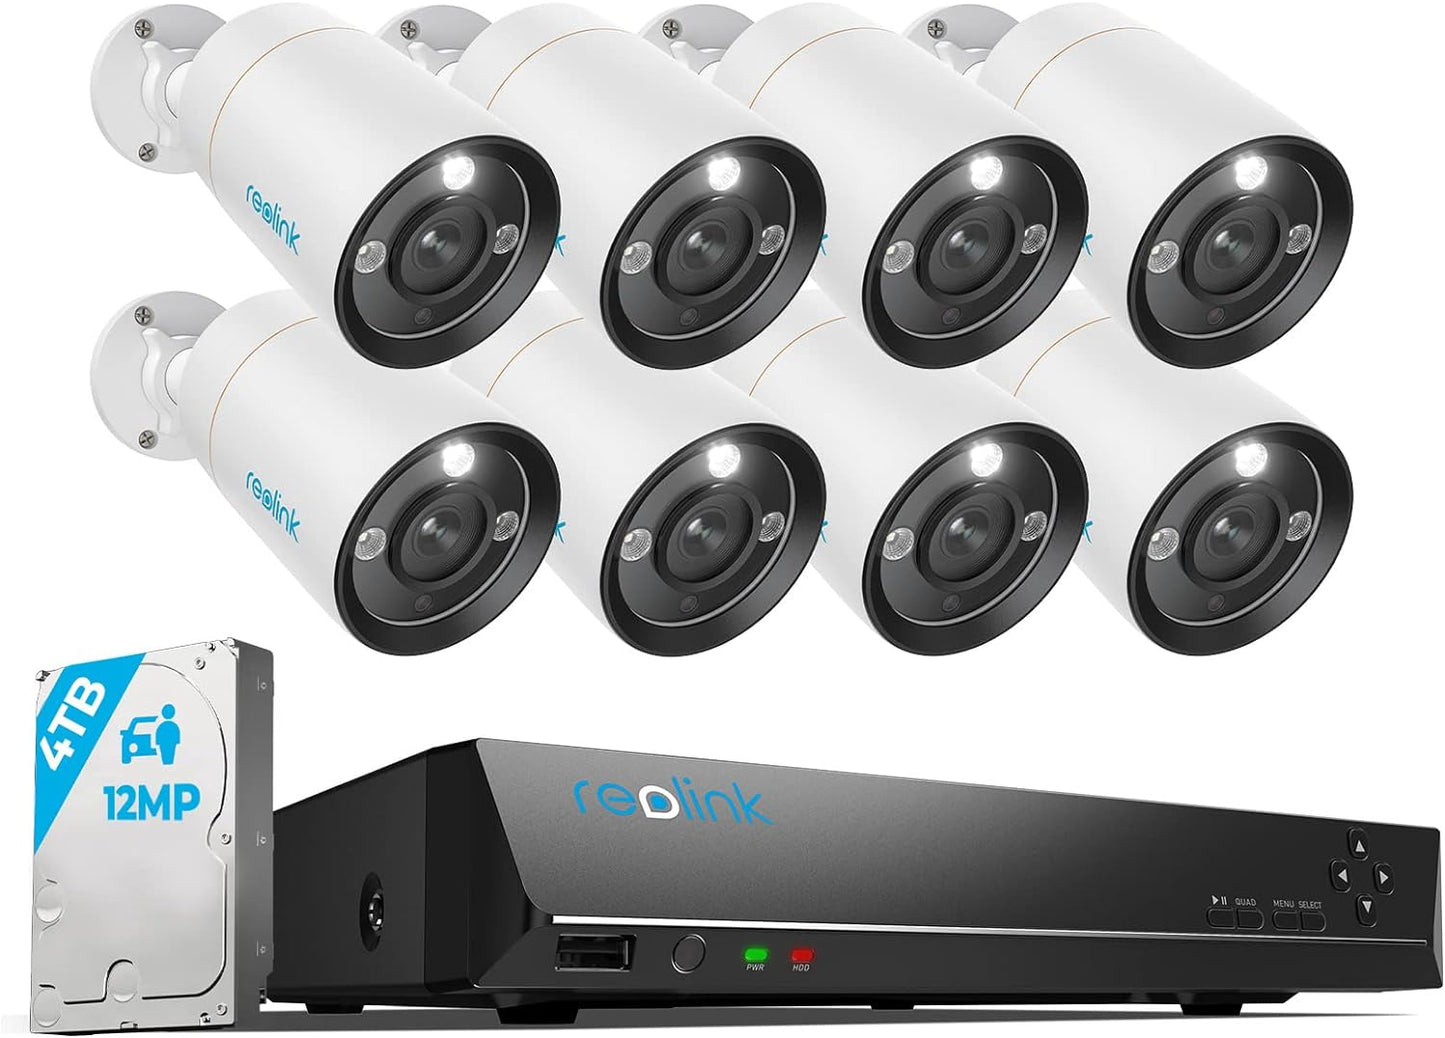 Reolink 12 MP Outdoor-Überwachungskamera-Set, 8 x PoE-IP-Kamera-Überwachung im Freien, Scheinwerfer, Personen-/Fahrzeugerkennung, 2-Wege-Audio, 24/7 Farb-/IR-Nachtsicht, 16 CH 4 TB HDD NVR, RLK16-1200B8-A